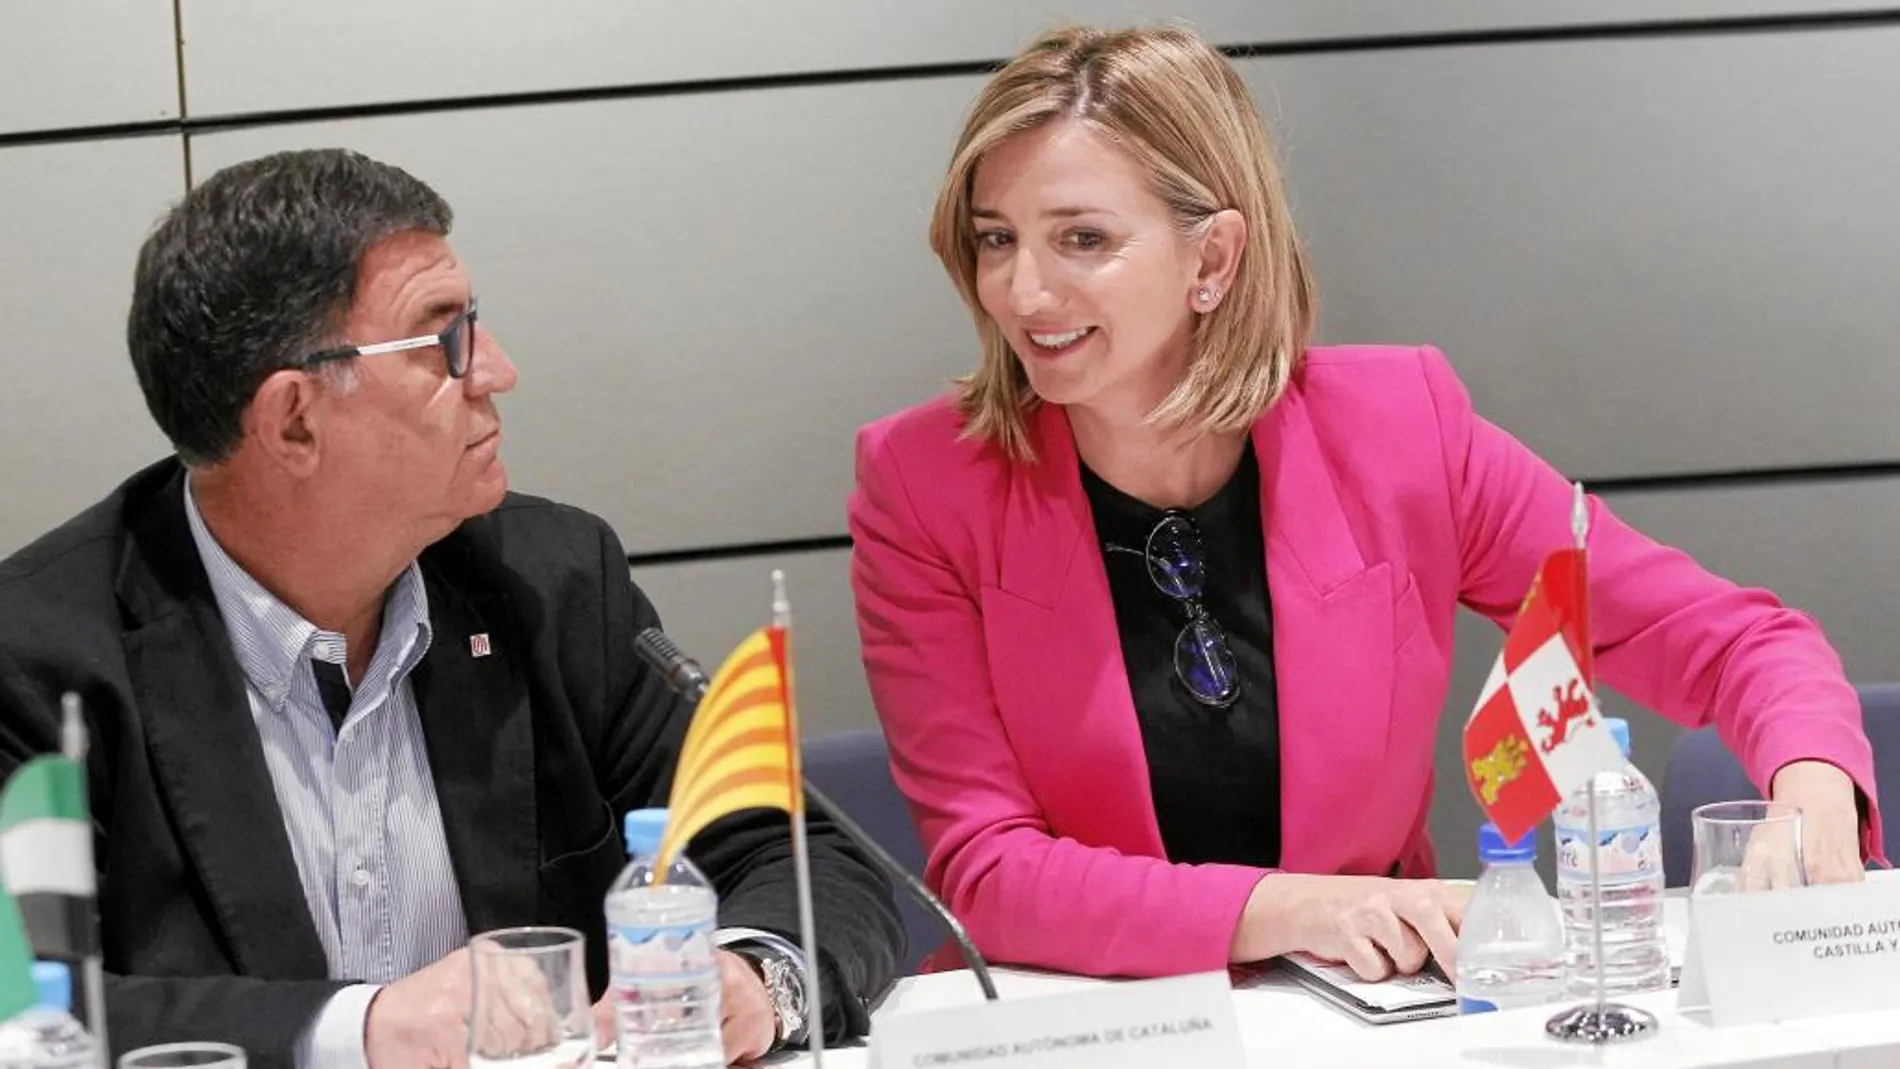 La consejera Alicia García junto al representante de la región de Cataluña, momentos antes del comienzo de la reunión